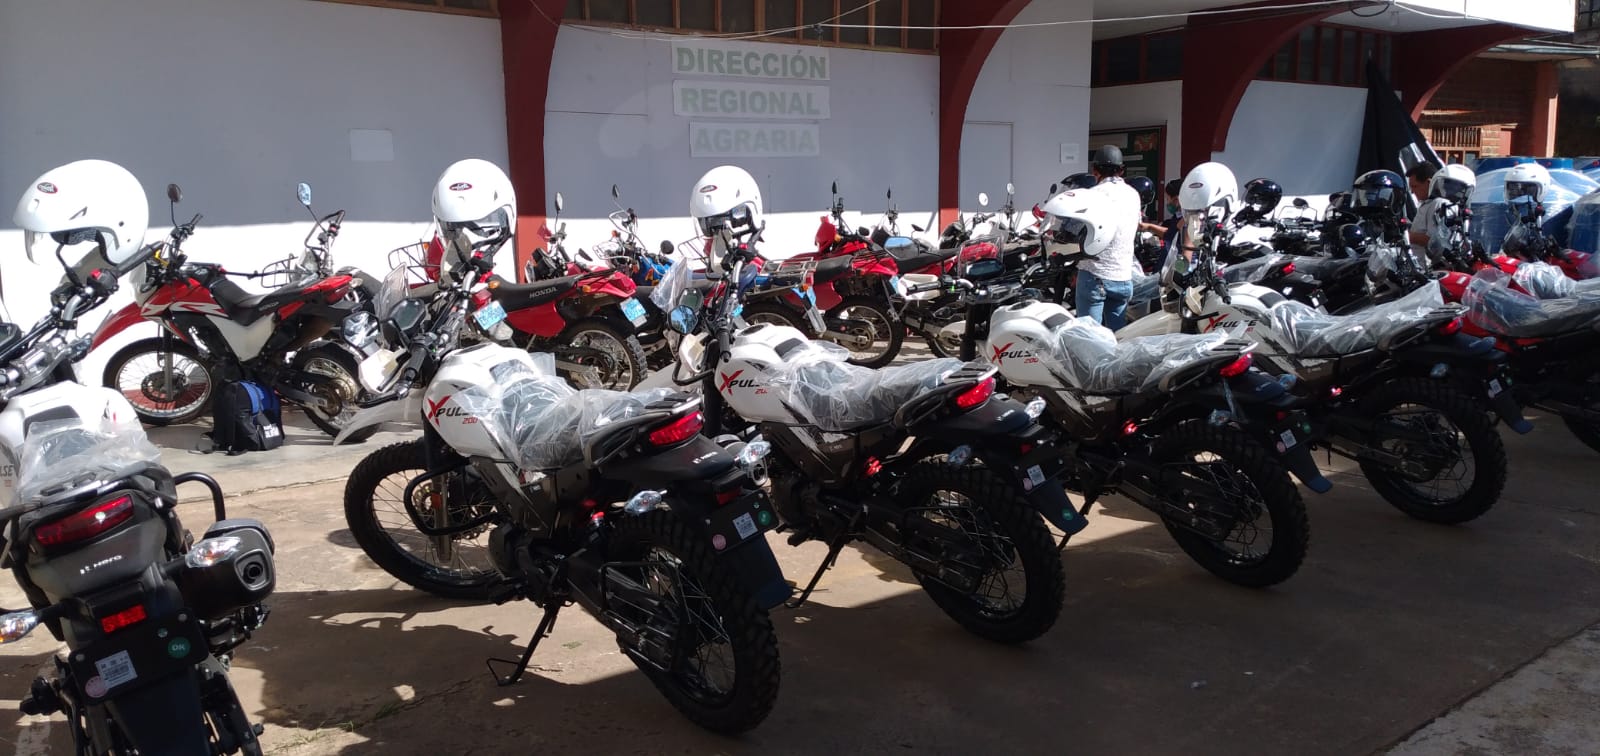 Hero realiza entrega de 15 motos todoterreno XPulse 200 al Gobierno Regional de Amazonas